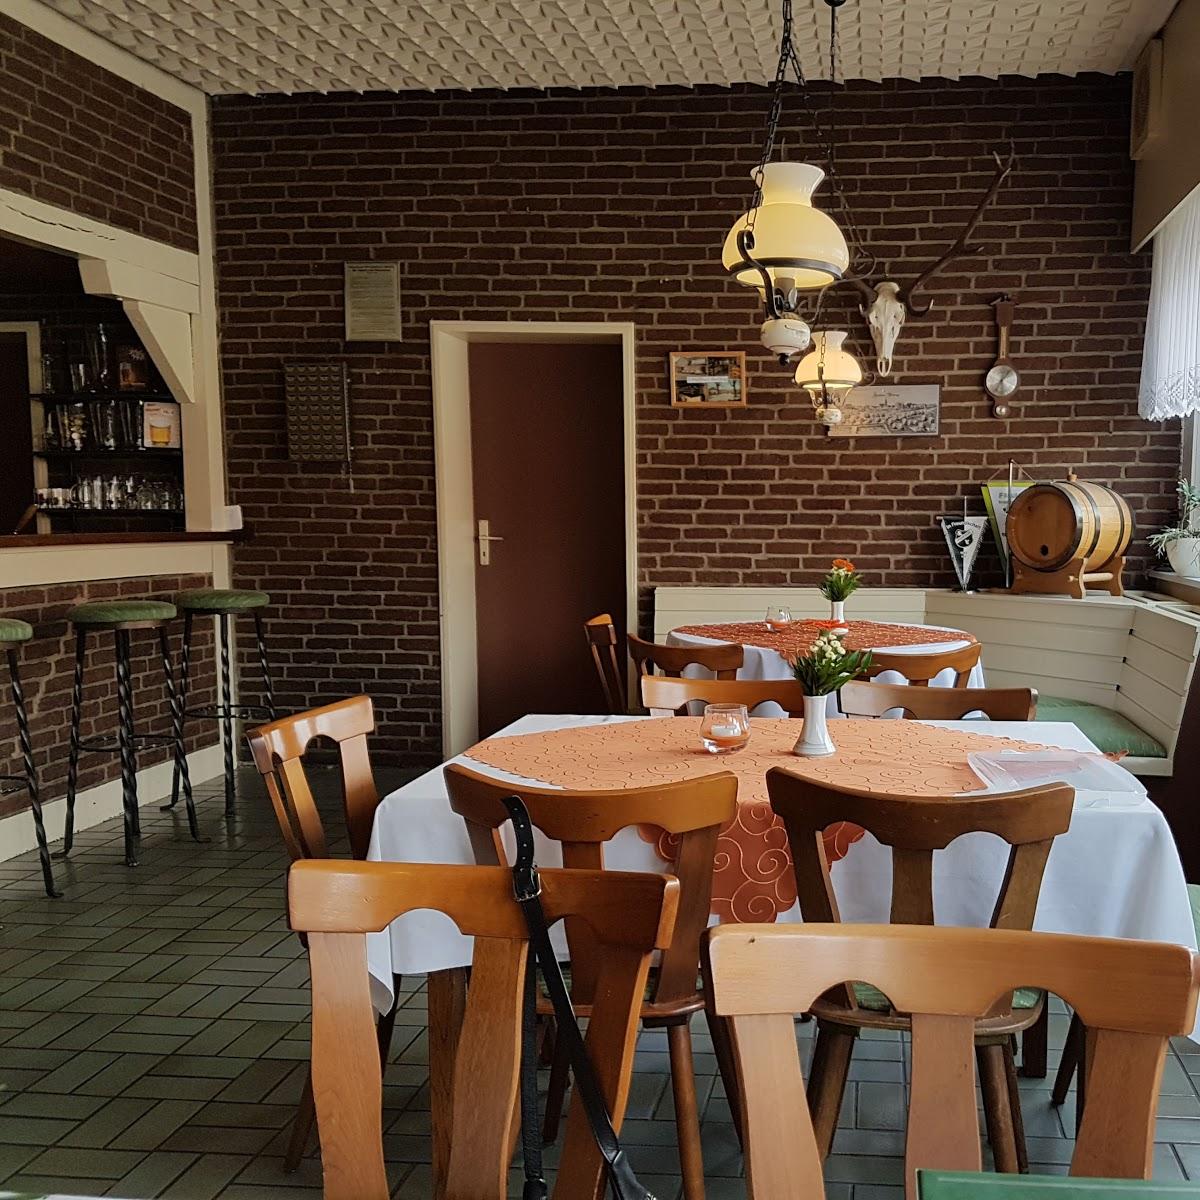 Restaurant "Zum Dorfkrug Inh:Renate Lindwor" in Wittingen